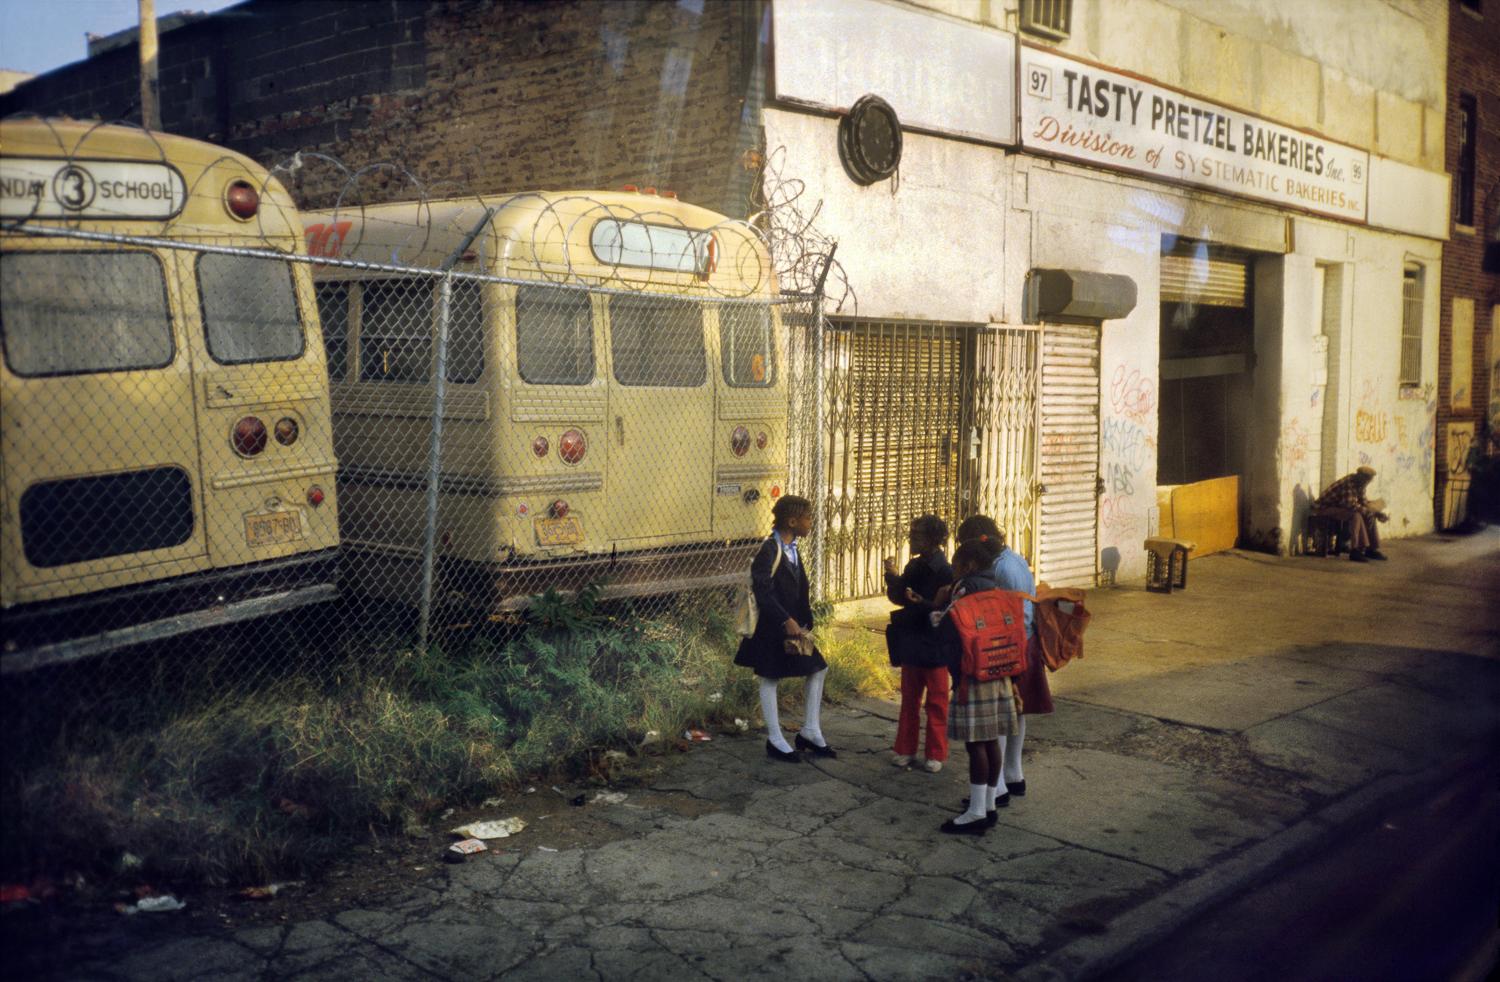 Tasty Pretzel Bakeries Starr Street, Bushwick, Brooklyn, NY, octobre 1983 - Photograph de Meryl Meisler